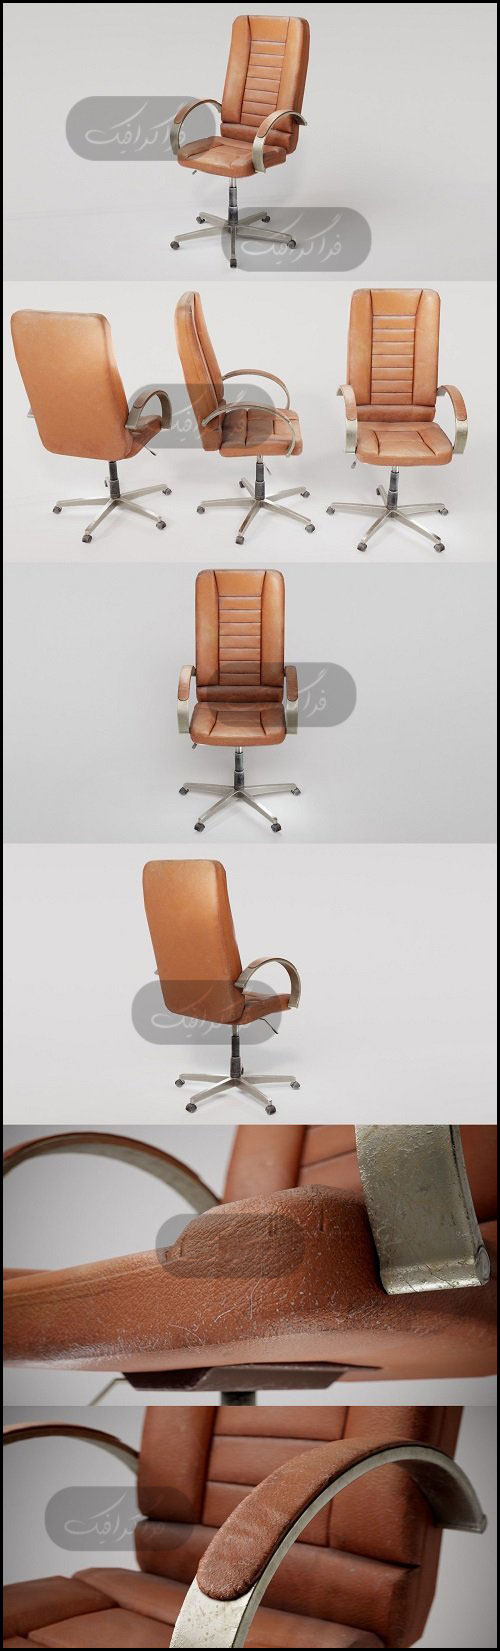 دانلود مدل 3 بعدی صندلی اداری چرمی